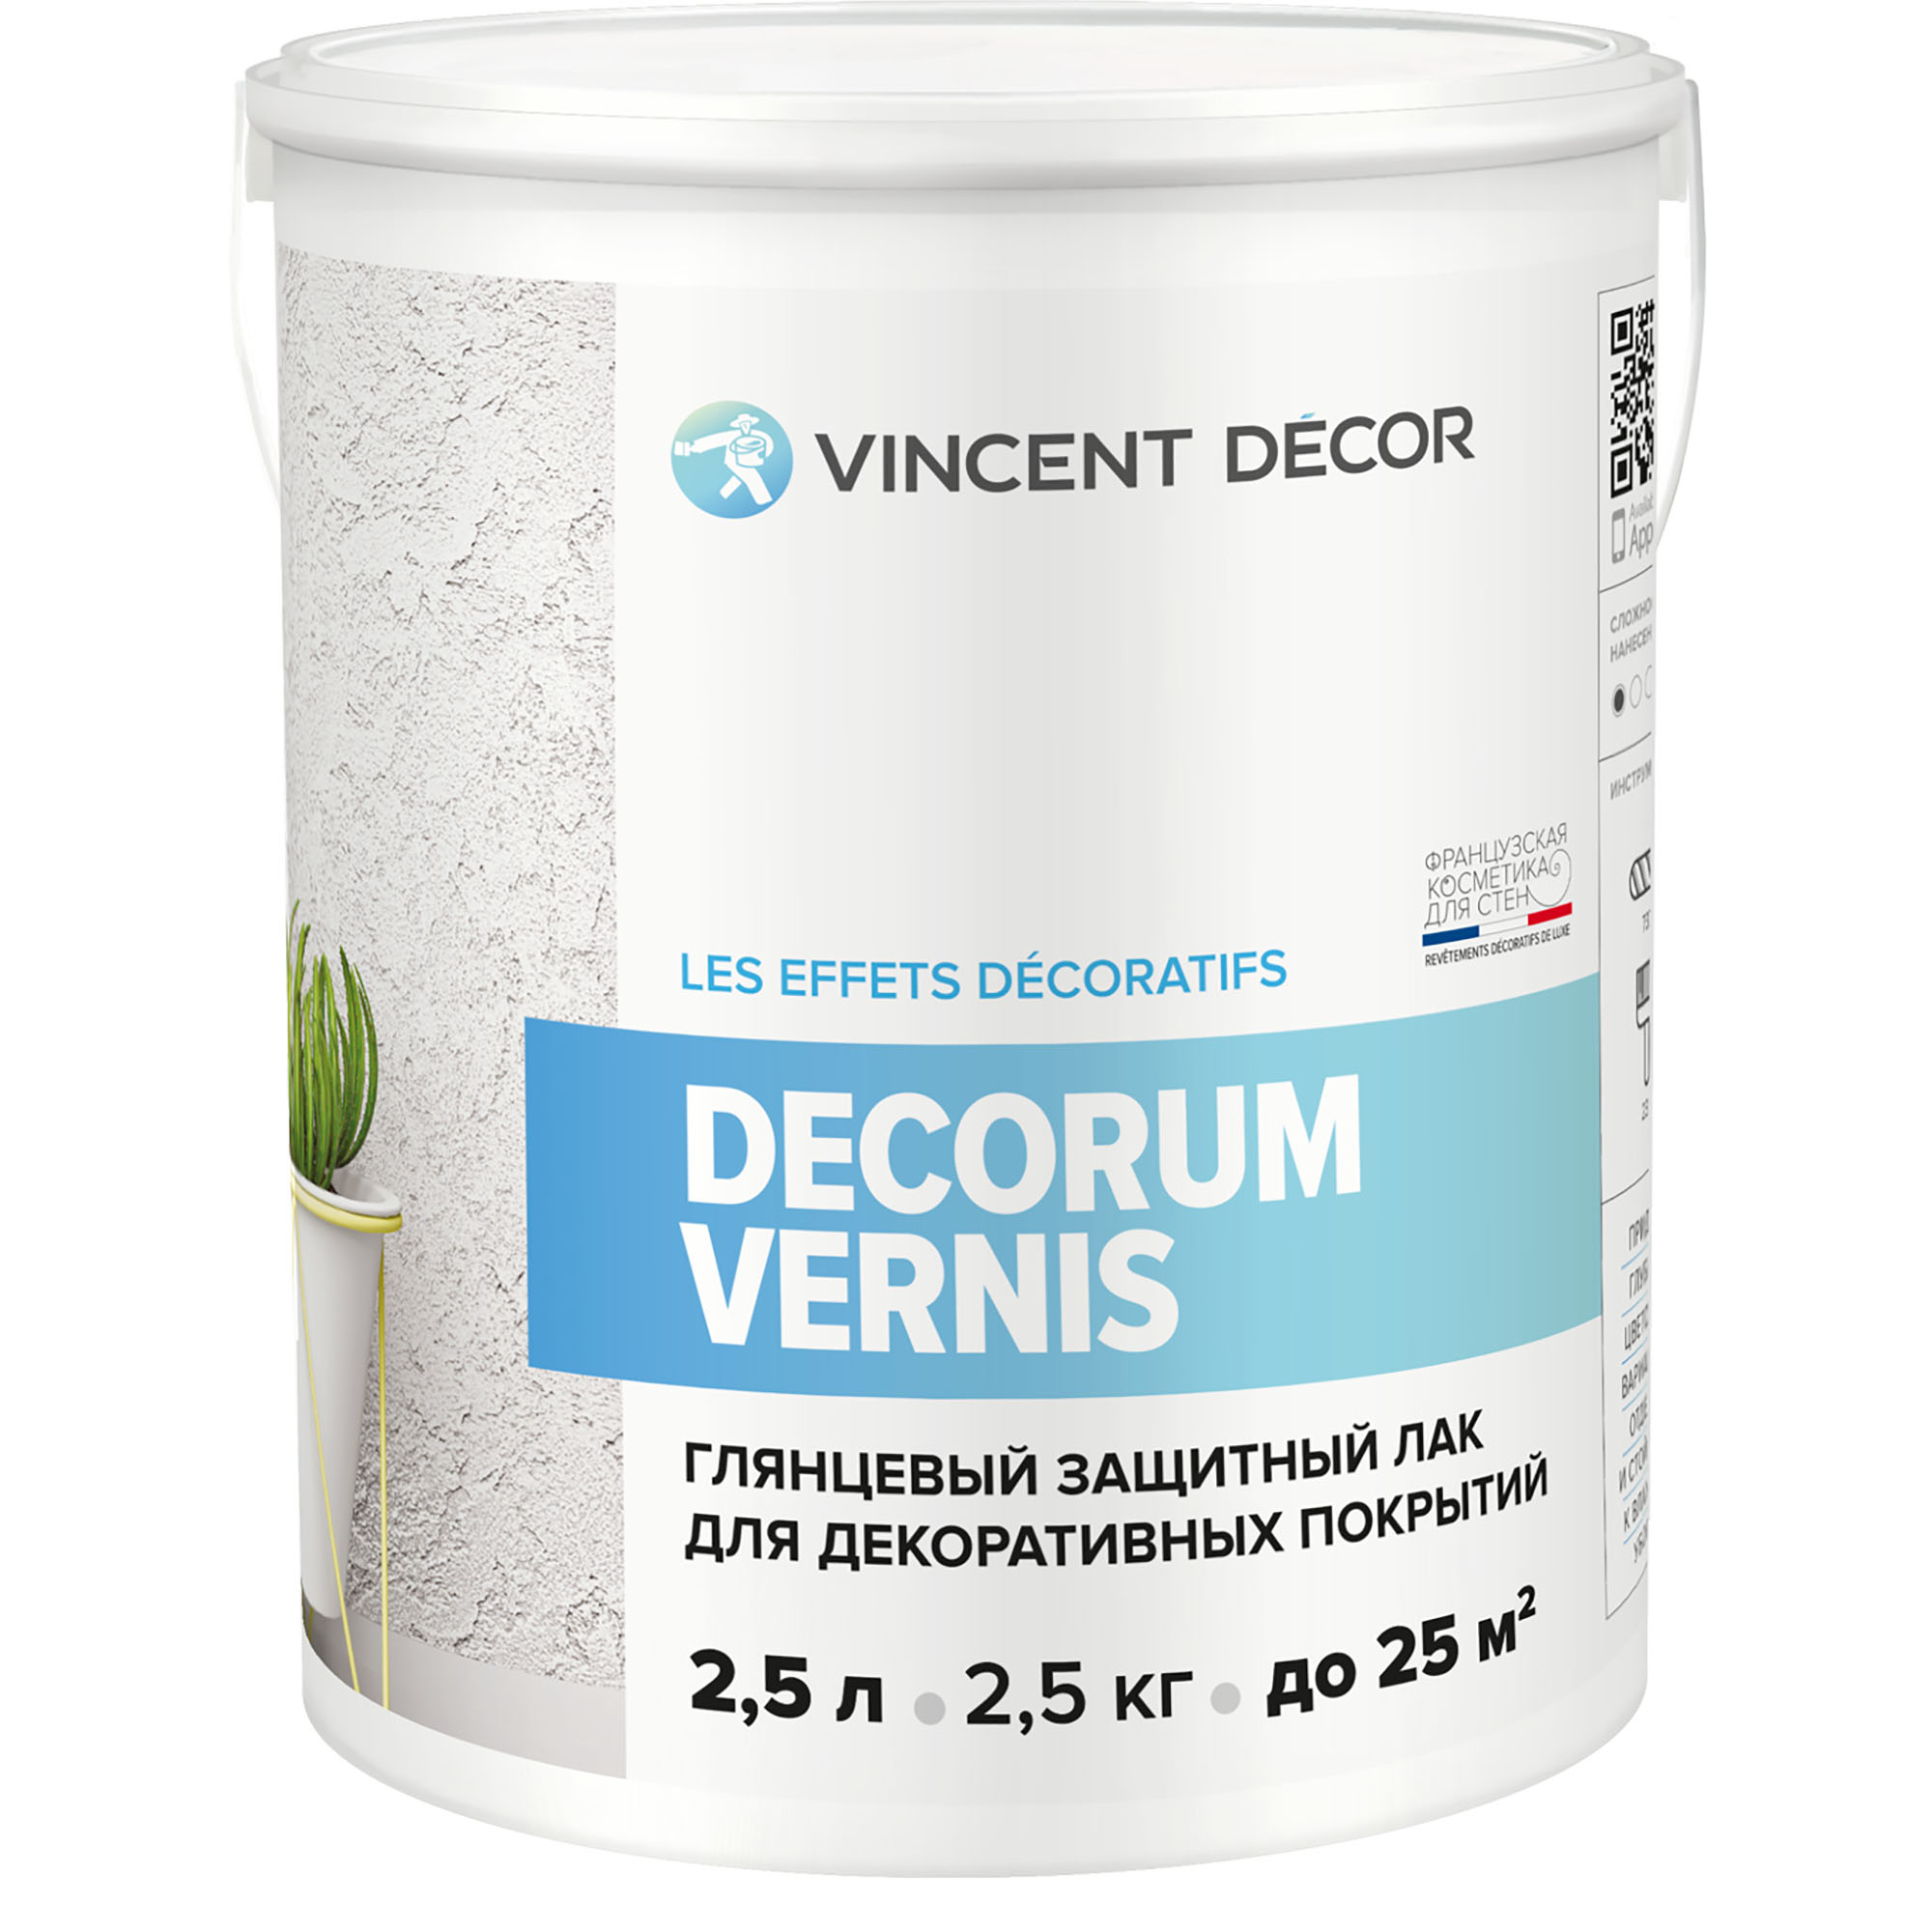 Лак защитный для декоративных покрытий Vincent Decor Decorum Vernis глянцевый 2,5 л воск для фактурных покрытий decoro lucido cera глянцевый 1кг